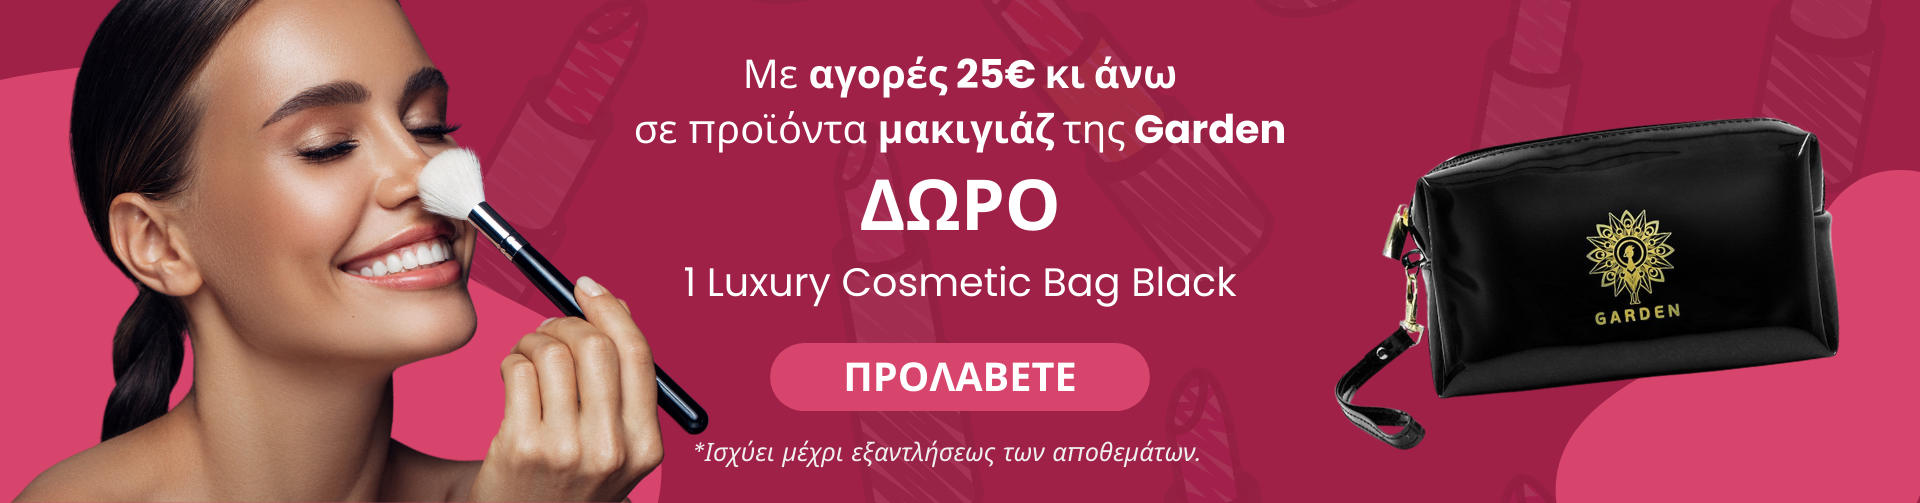 ΔΩΡΟ 1 Luxury Cosmetic Bag Black